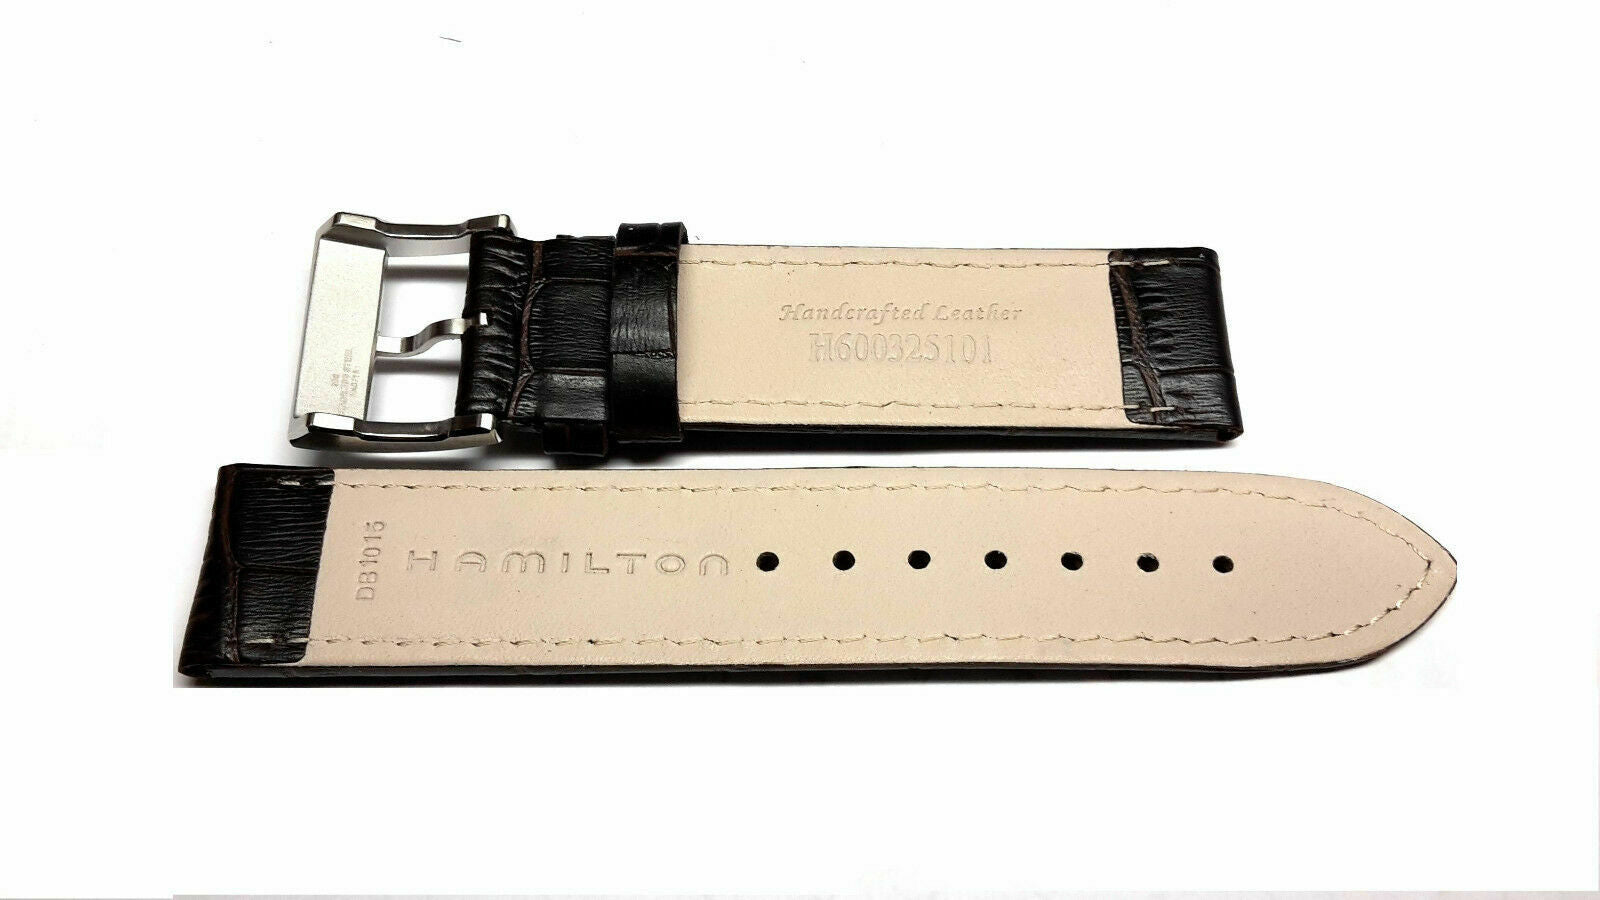 Hamilton H600325101 Jazzmaster Brown Leather White Stitch 20mm Watch Strap